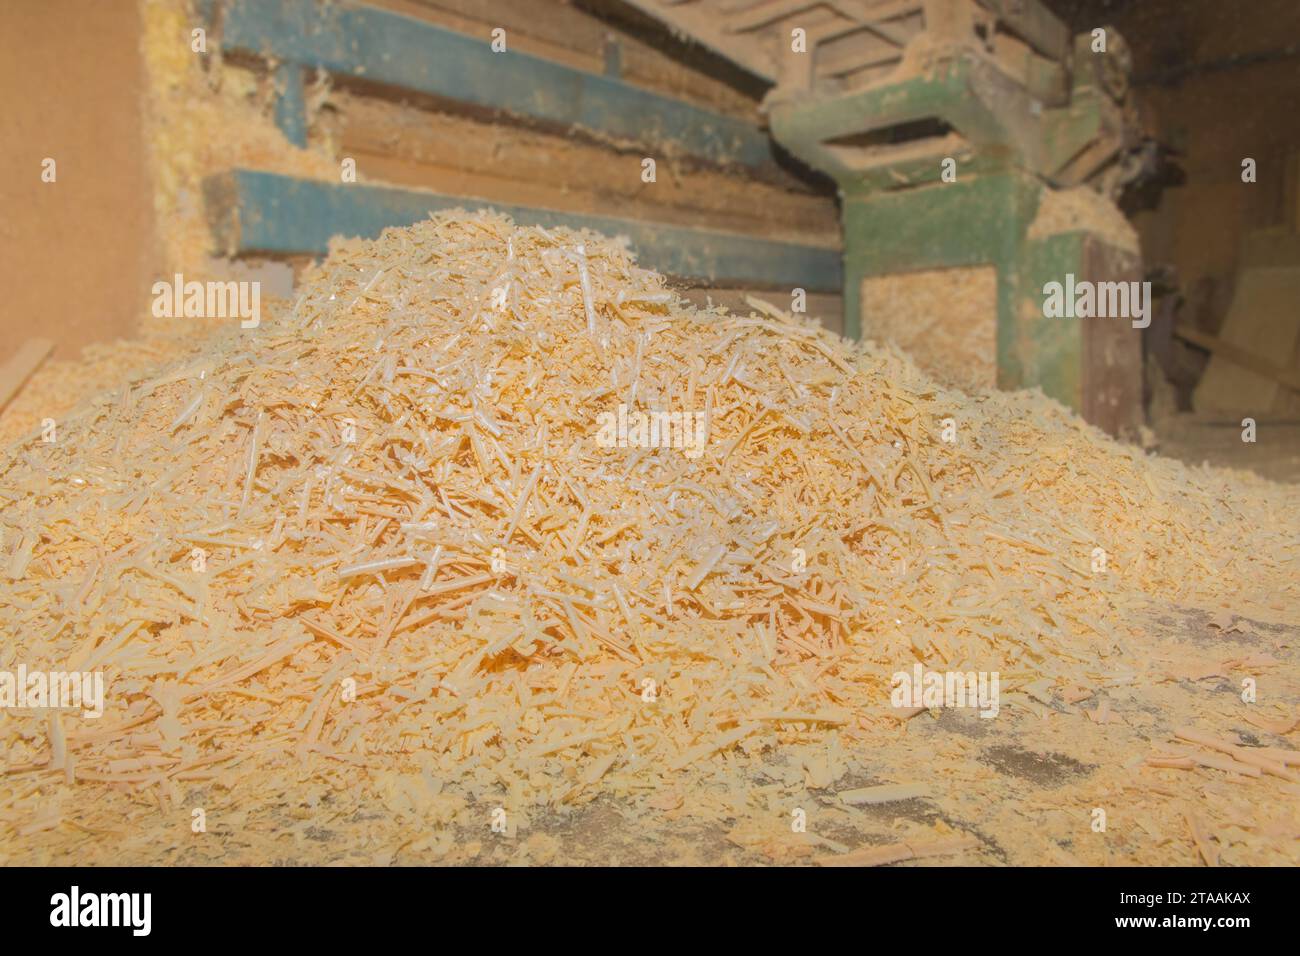 Riciclaggio dei rifiuti di Sawdust legno impianto industriale di legno riciclaggio dell'industria delle macchine utensili. Foto Stock